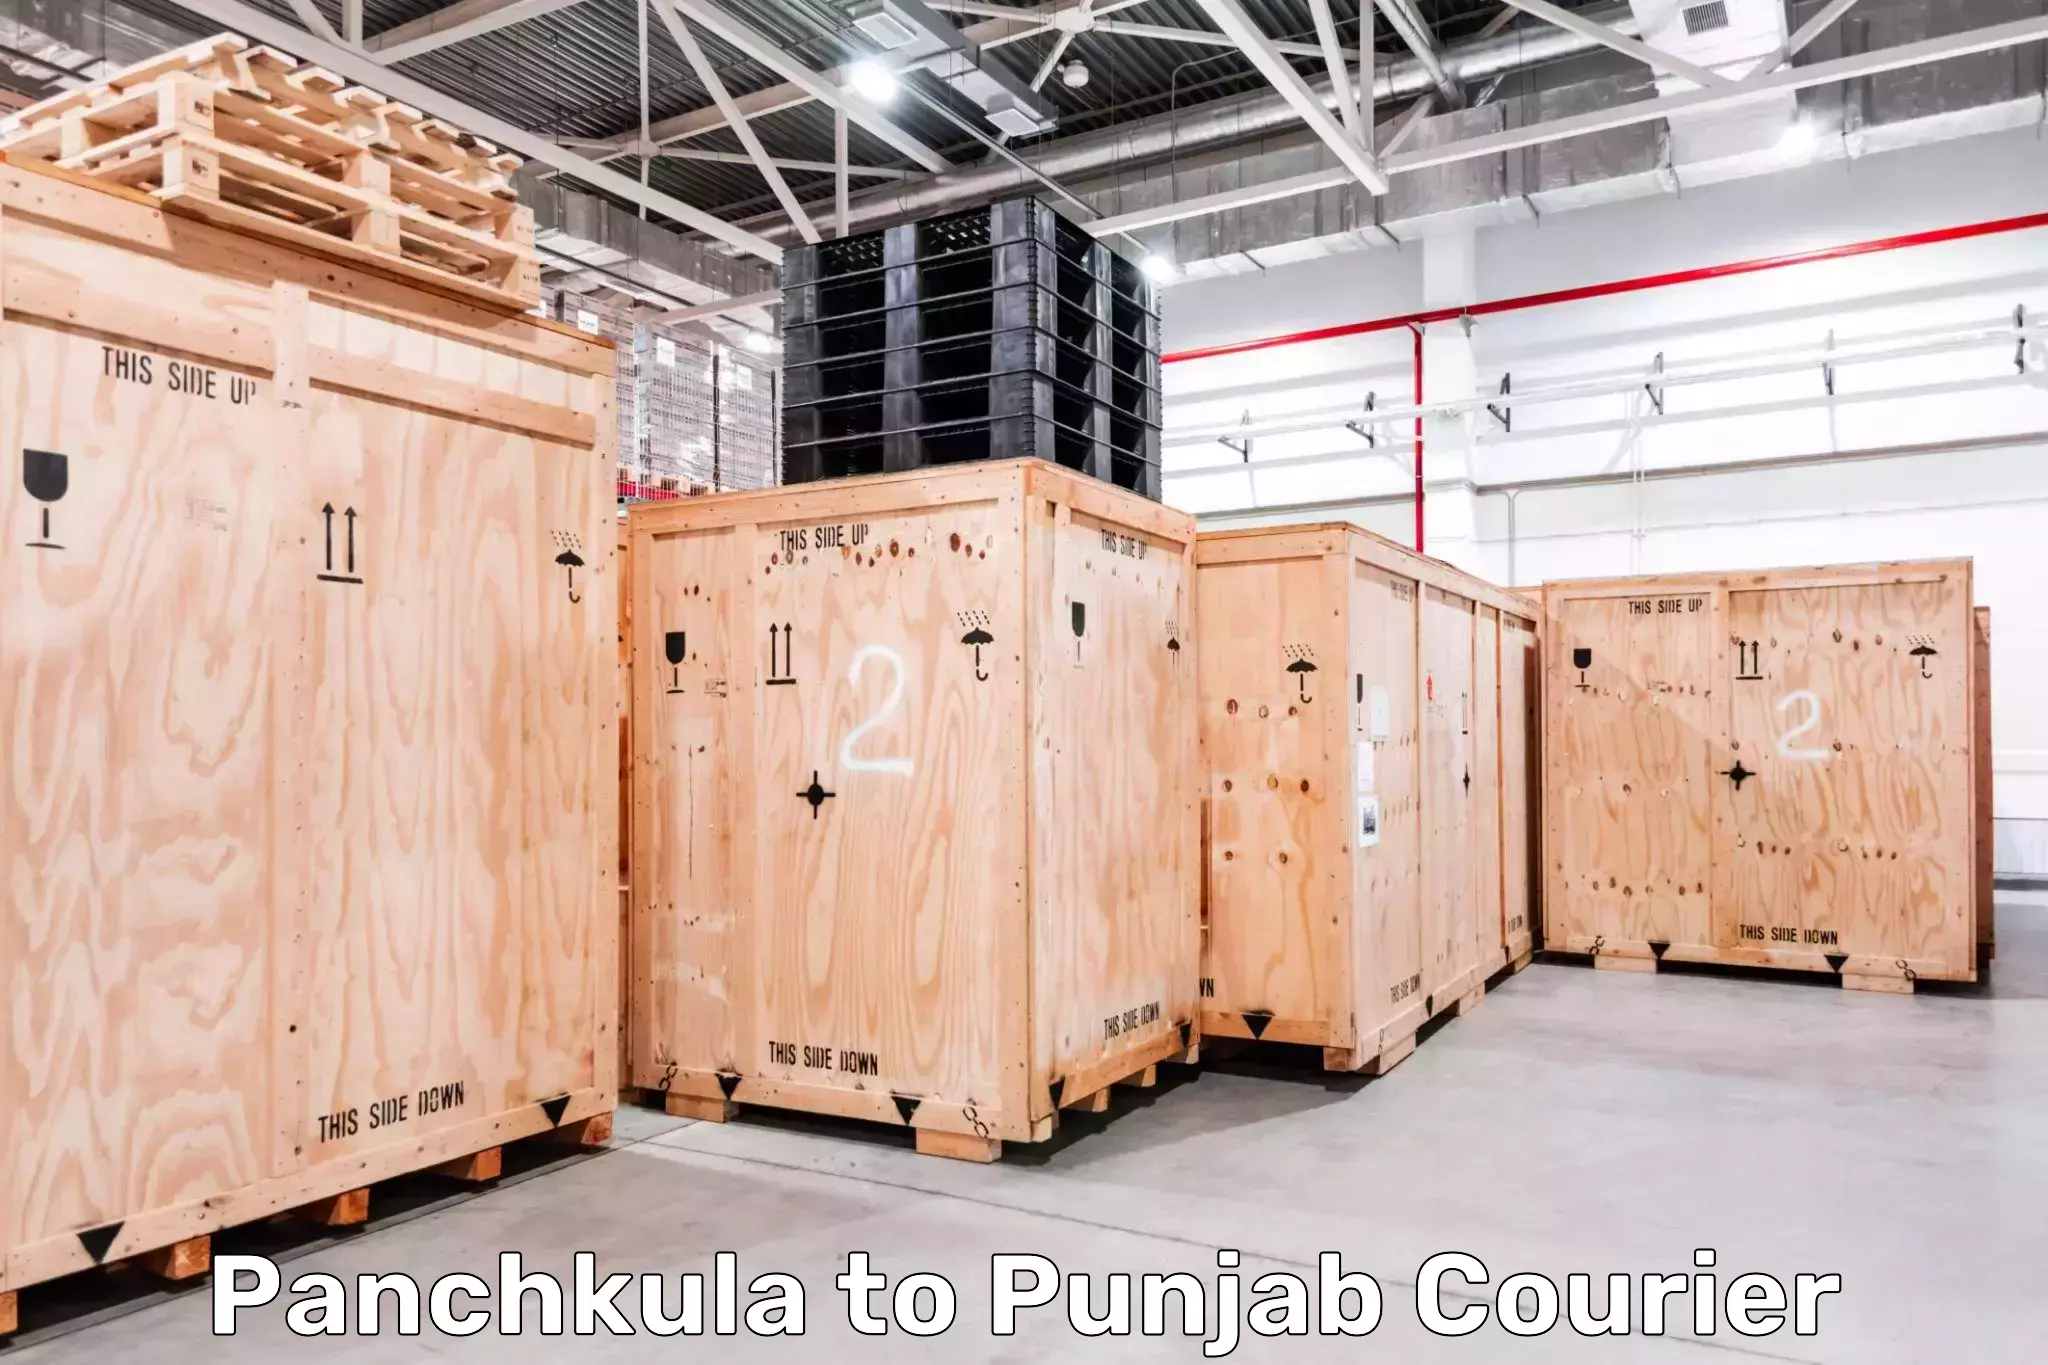 Courier service innovation Panchkula to Malerkotla